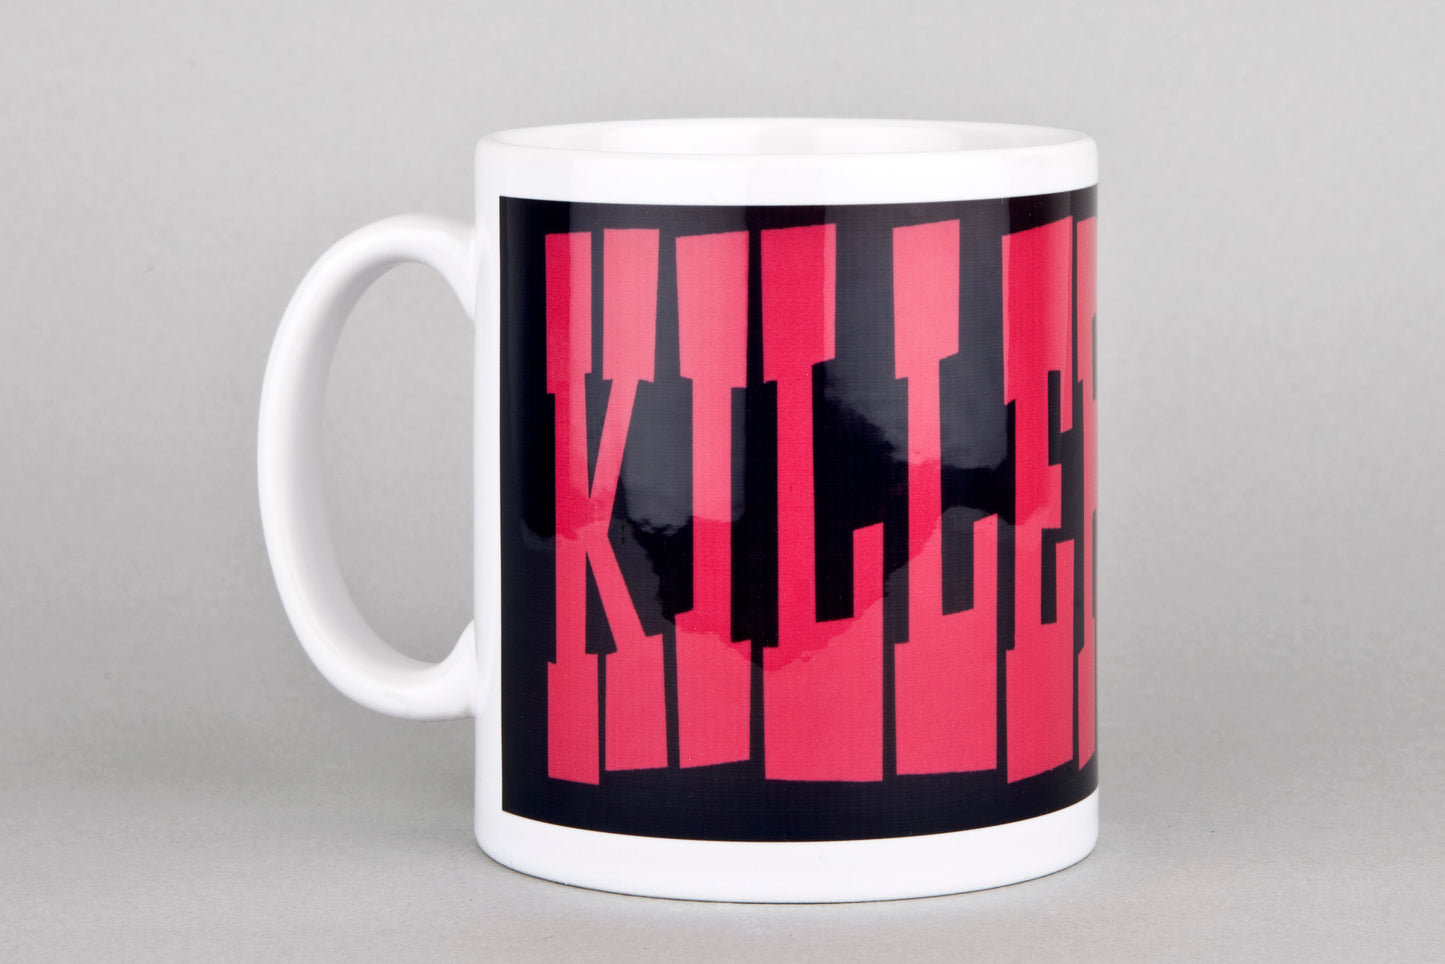 Killertone large logo black mug